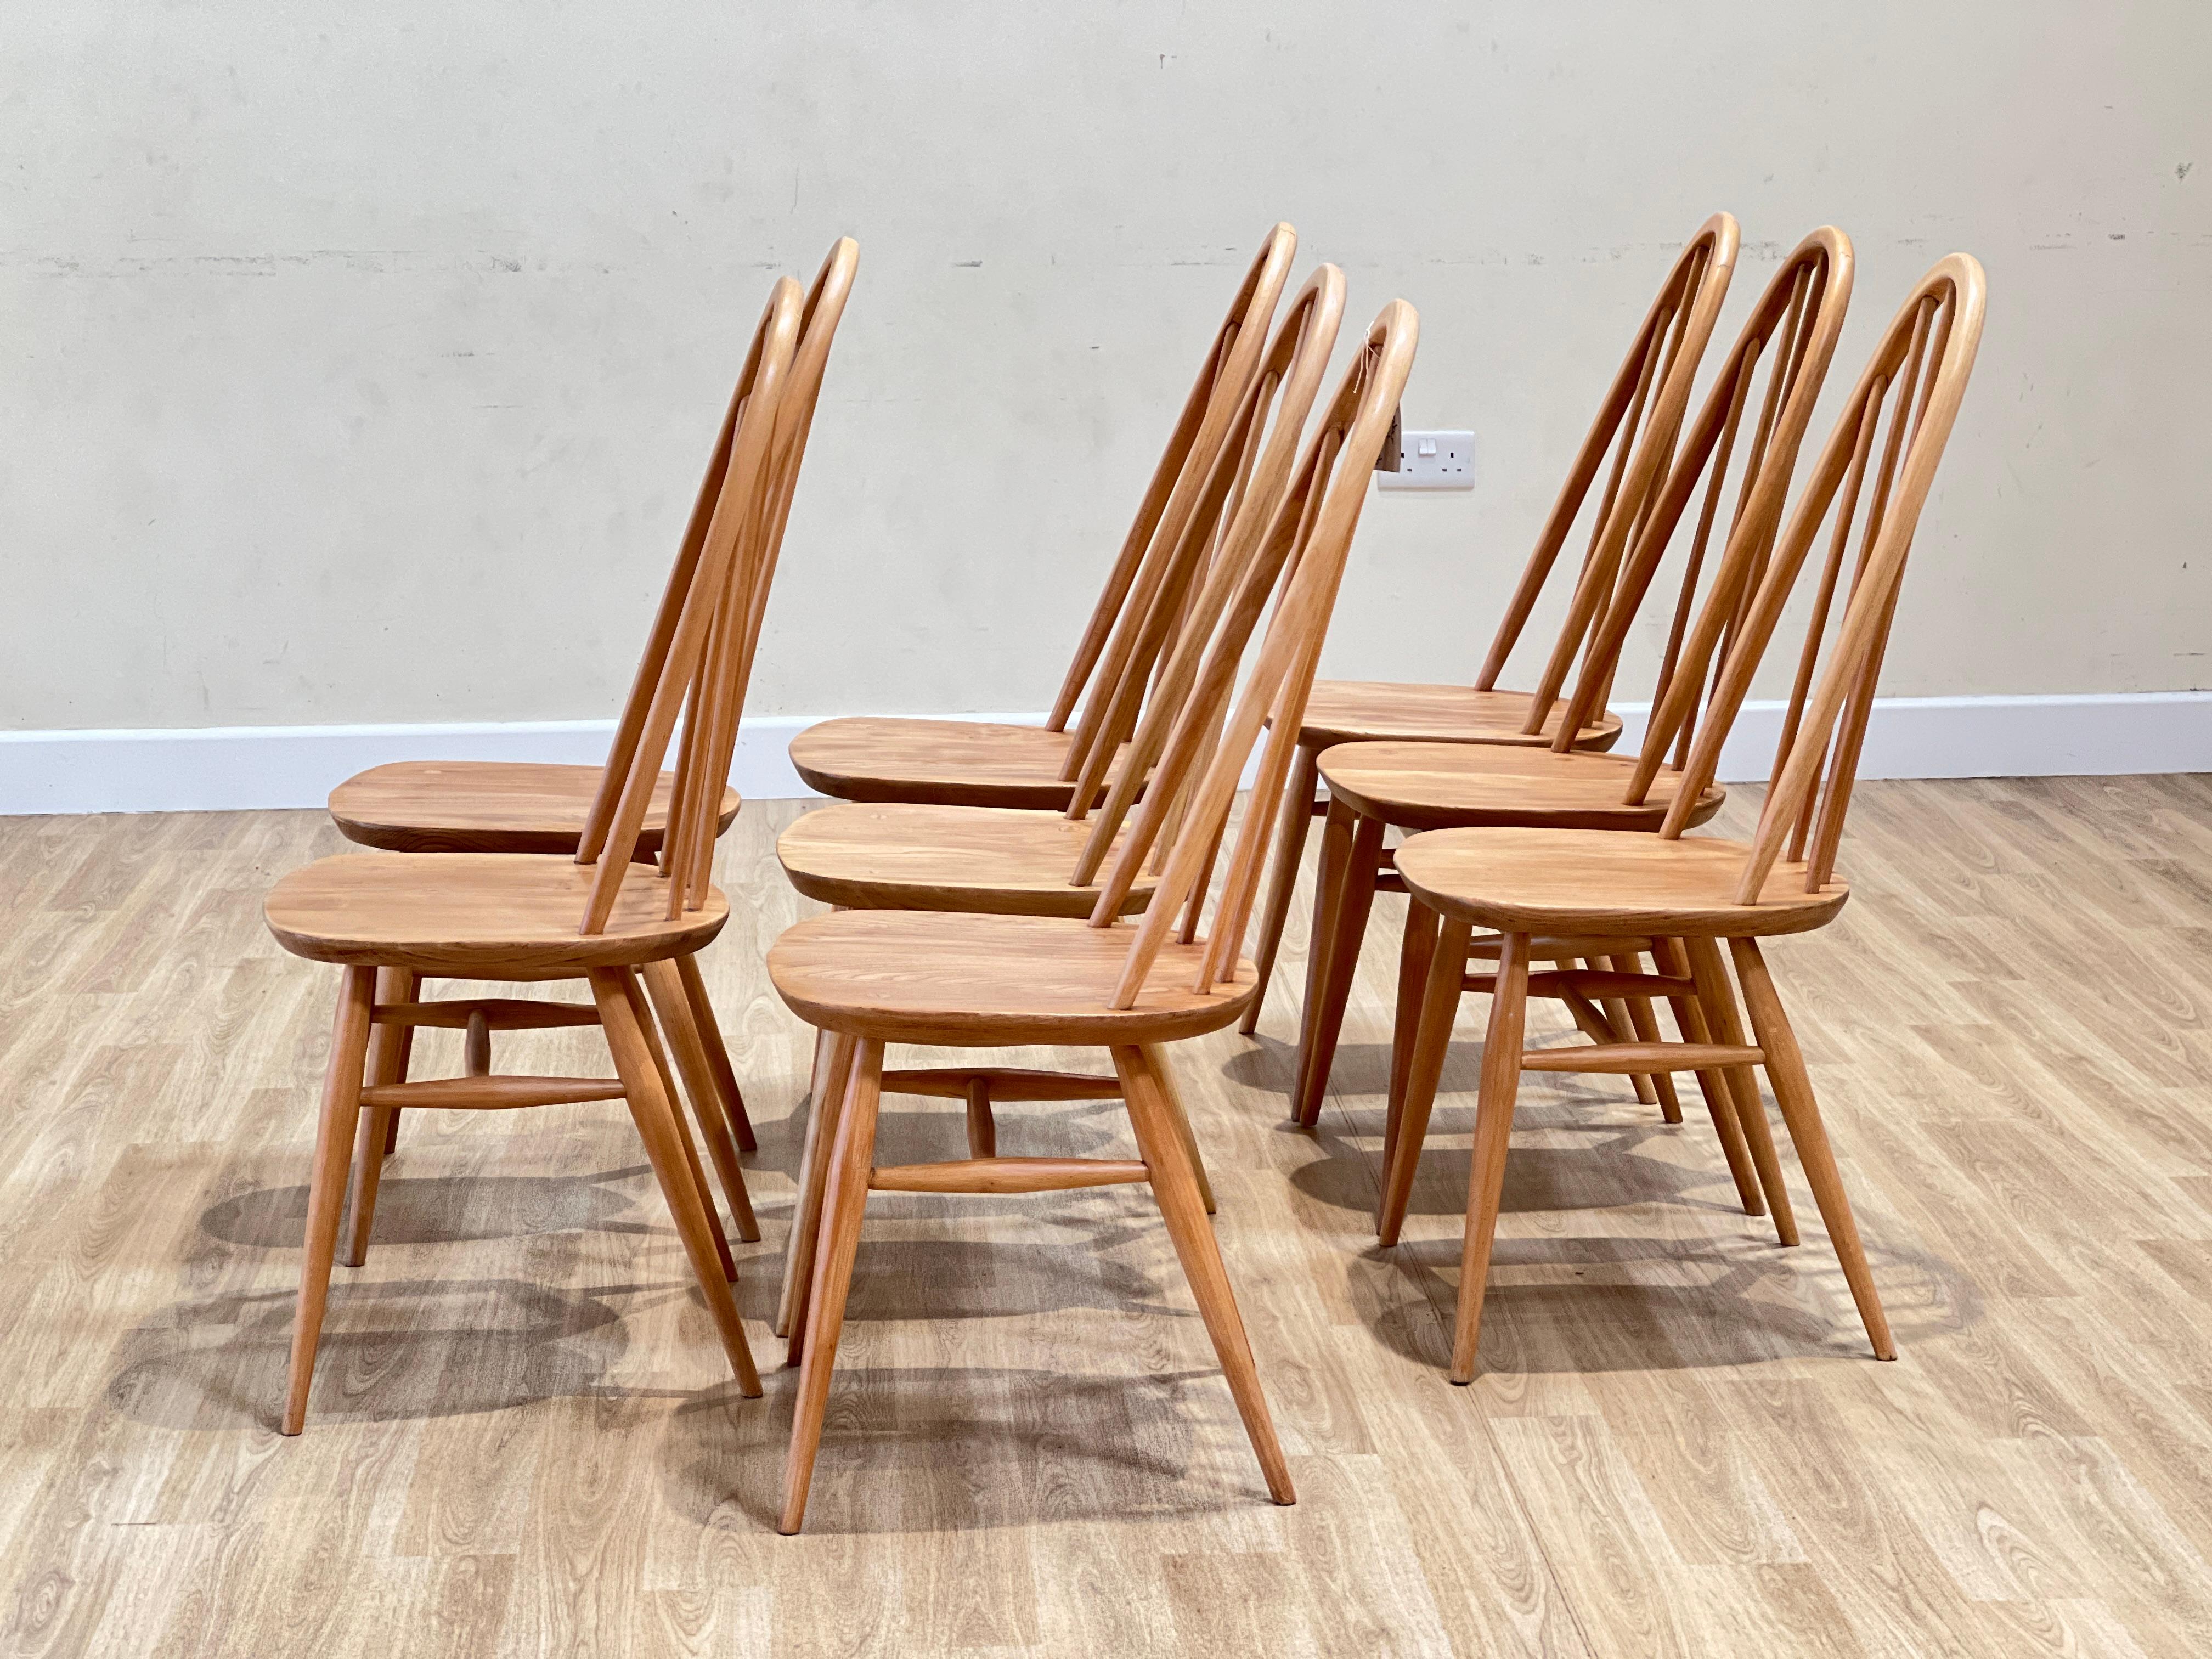 Diese Stühle wurden in den 1960er Jahren von Luciano Ercoloni in England entworfen. Sie sind Teil der Windsor Collection, die für ihre zeitlose Schönheit und ihre handwerkliche Qualität bekannt ist. Die Stühle werden in Handarbeit aus hochwertigem